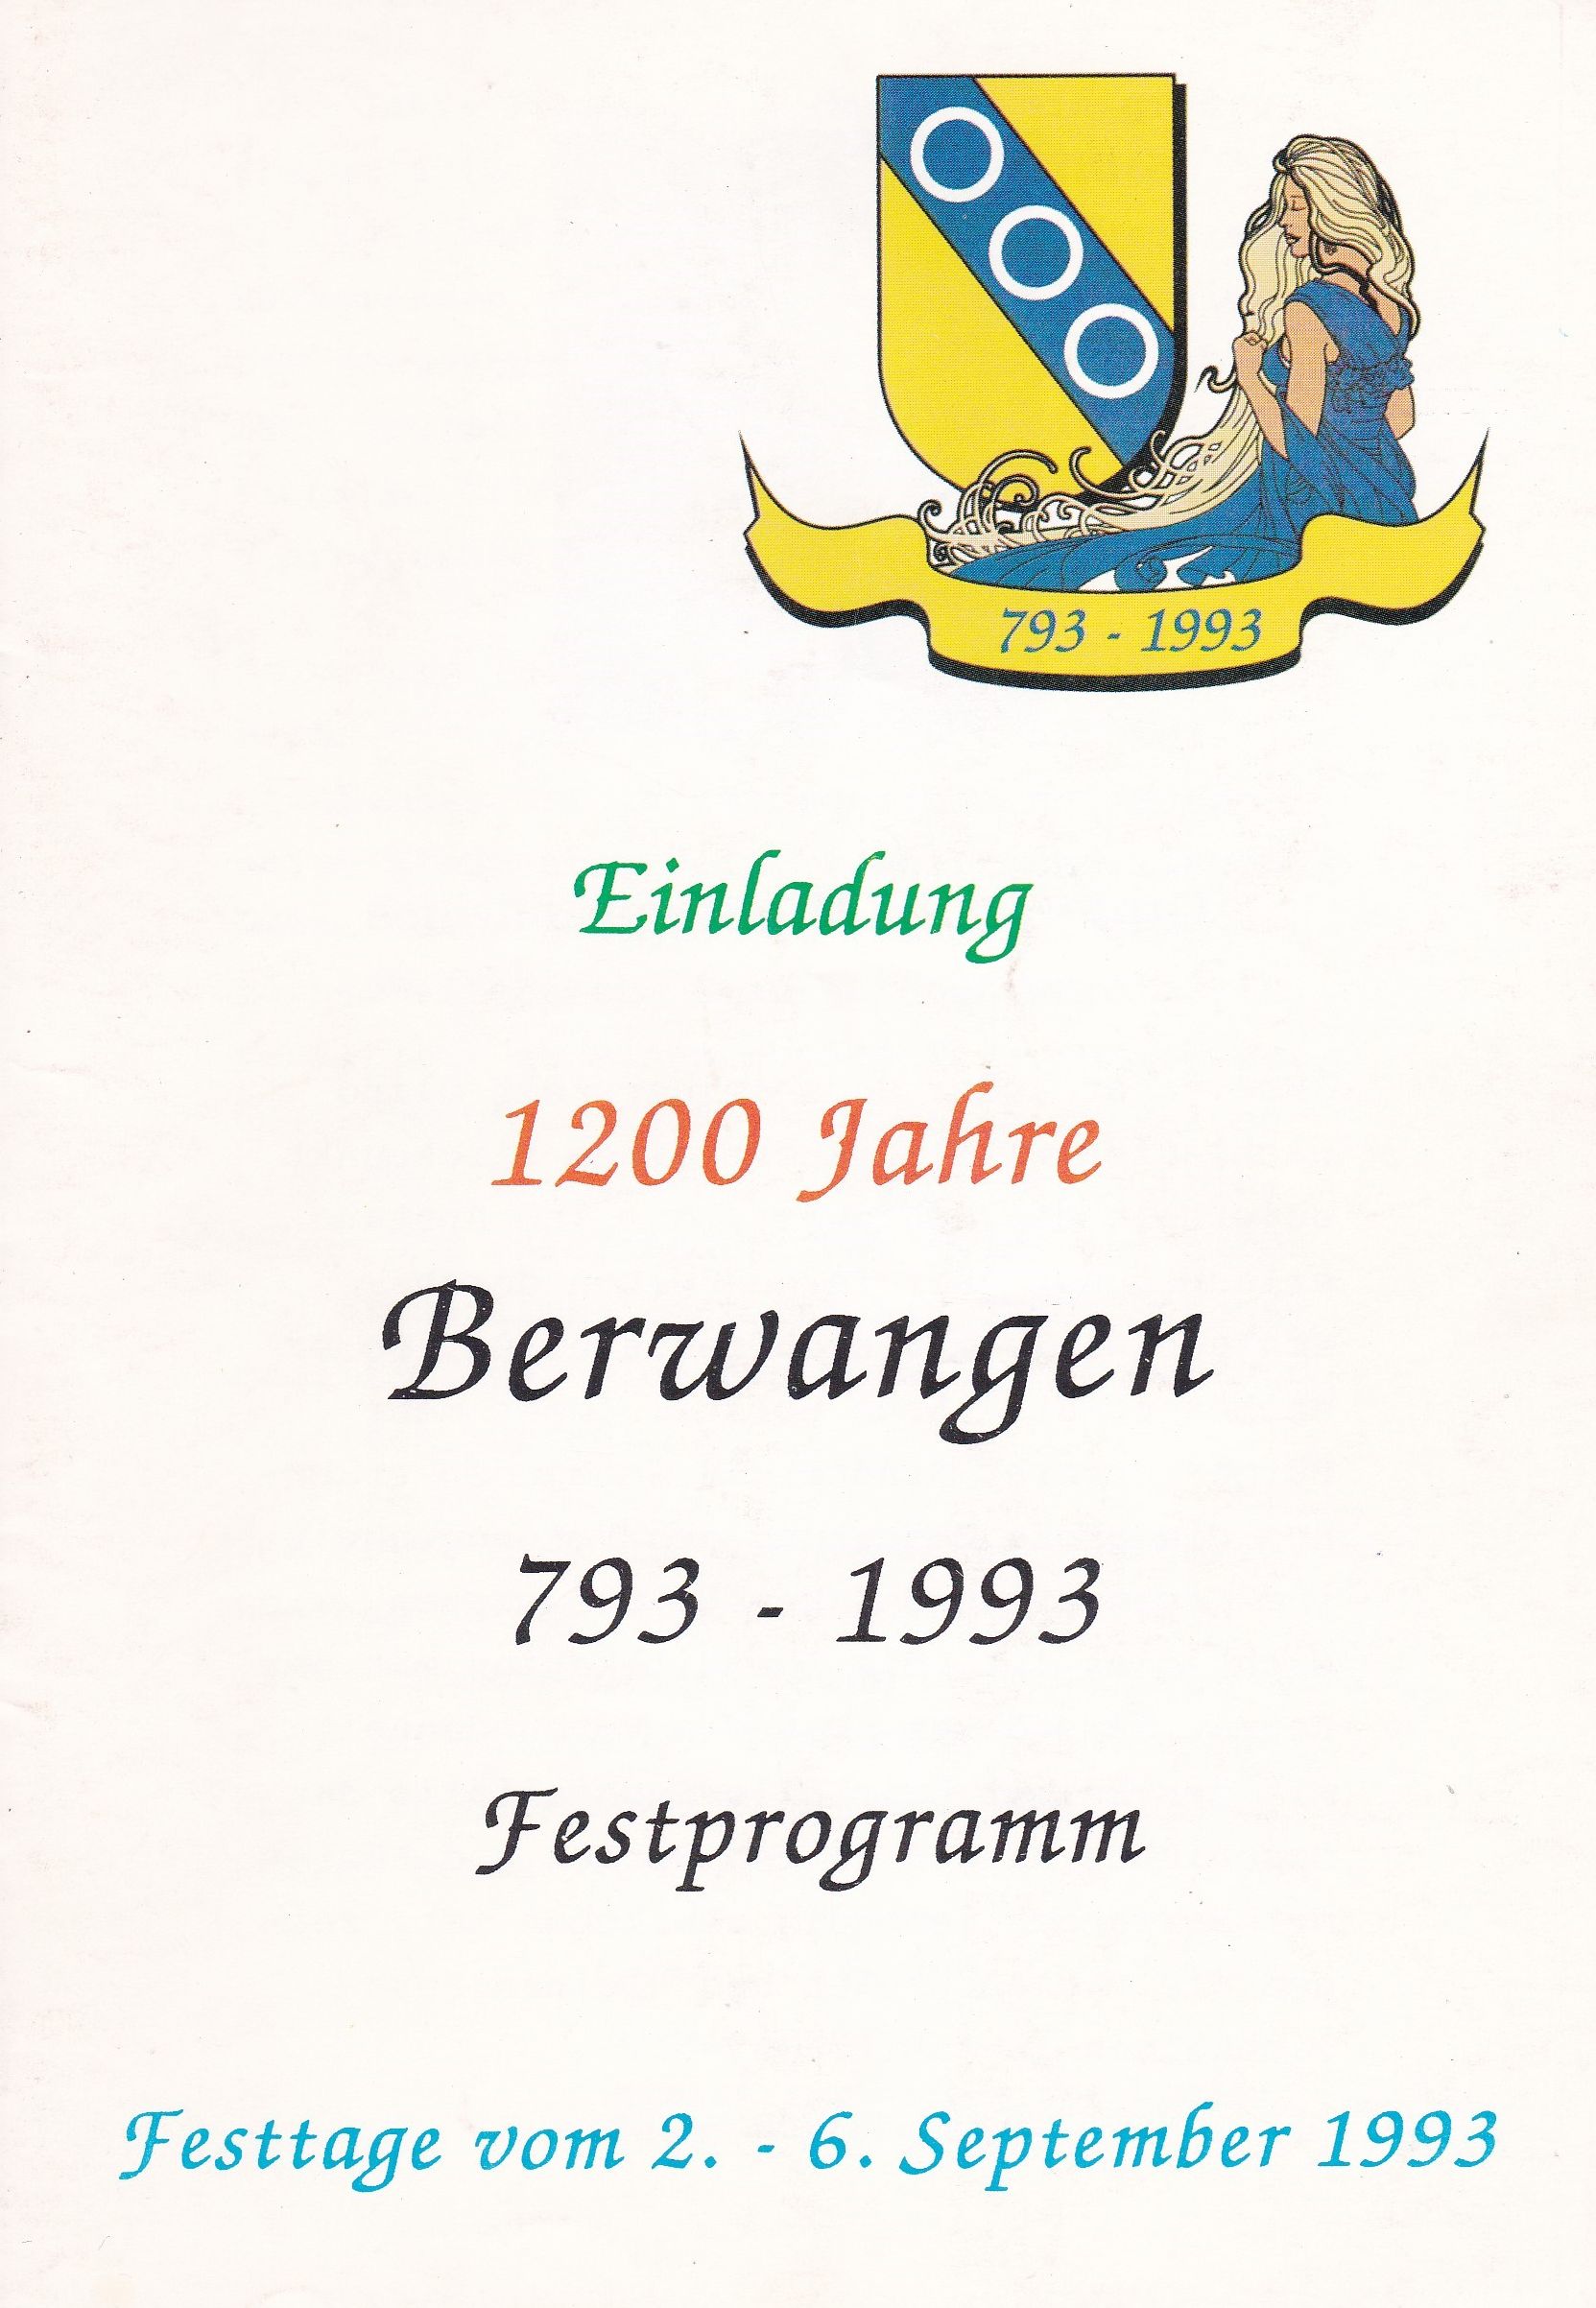  Auf dem Cover Steht: Einladung 1200 Jahre Berwangen 793 - 1993 Festprogramm, Festtage vom 2. - 6. September 1993 - das Bild wird mit Klick vergrößert 